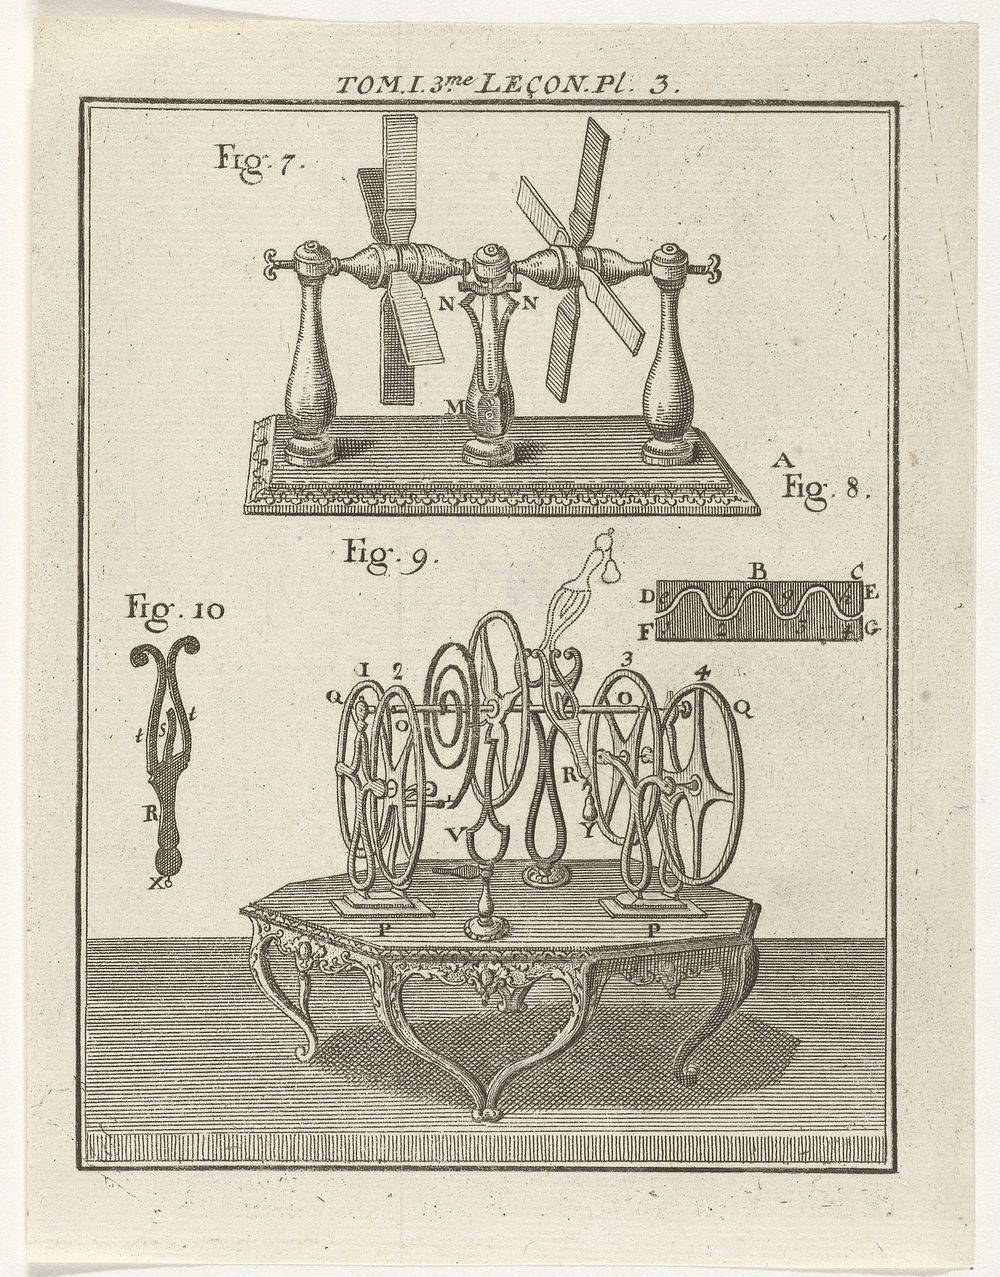 Natuurkundige instrumenten (1759) by Nicolaas van Frankendaal and Kornelis van Tongerlo